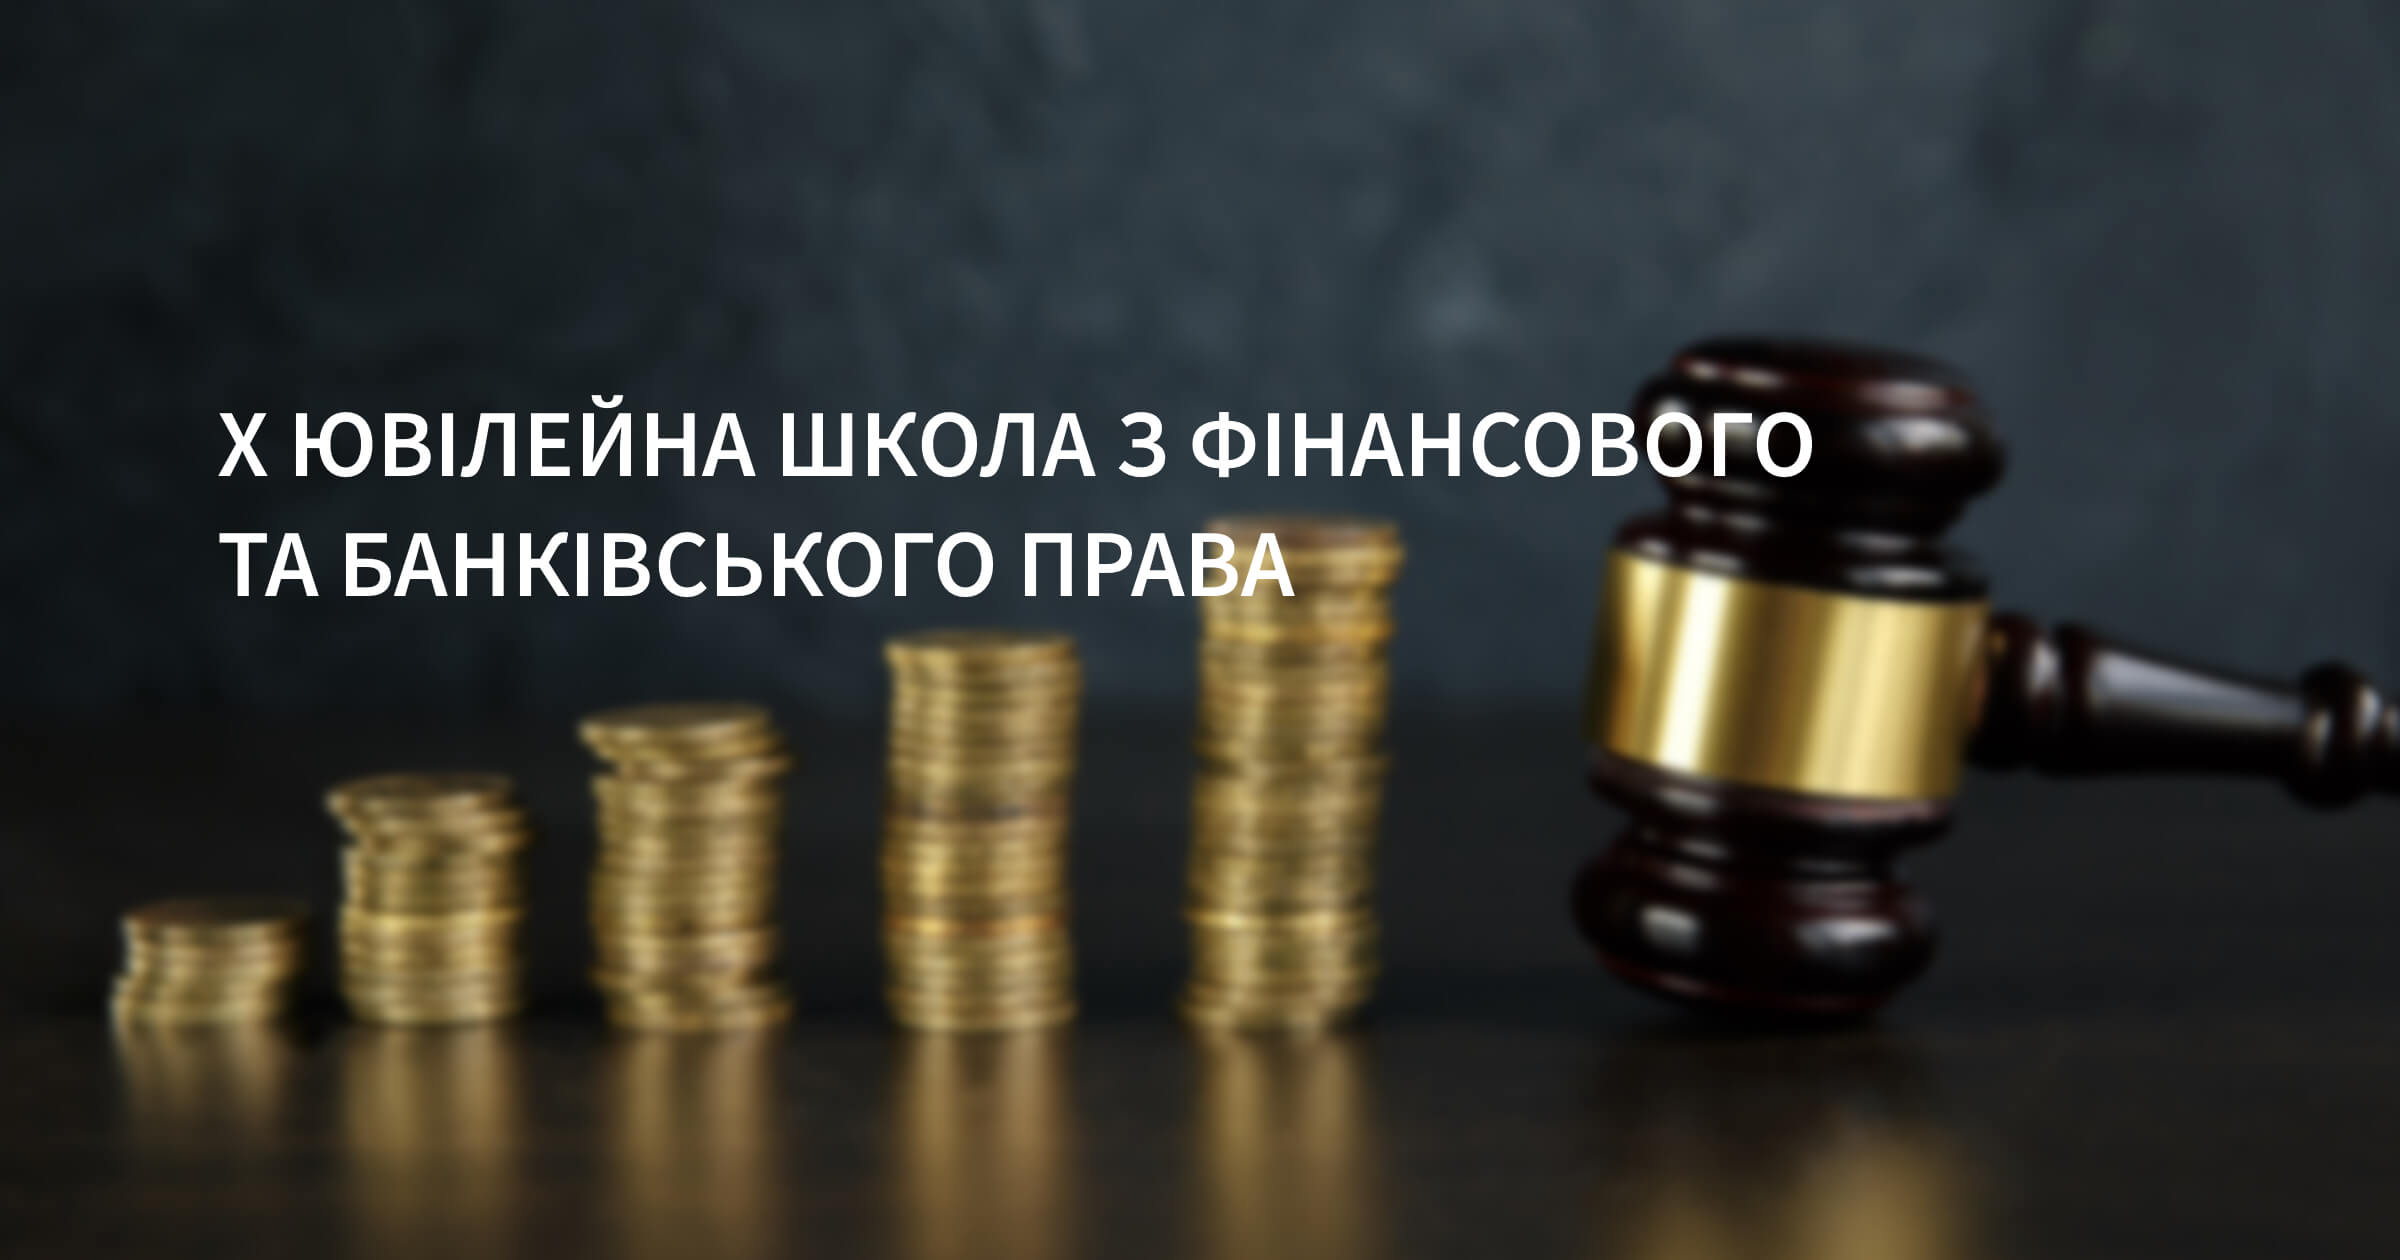 10 Yuvileina Shkola z Finansovoho ta Bankivskoho prava.